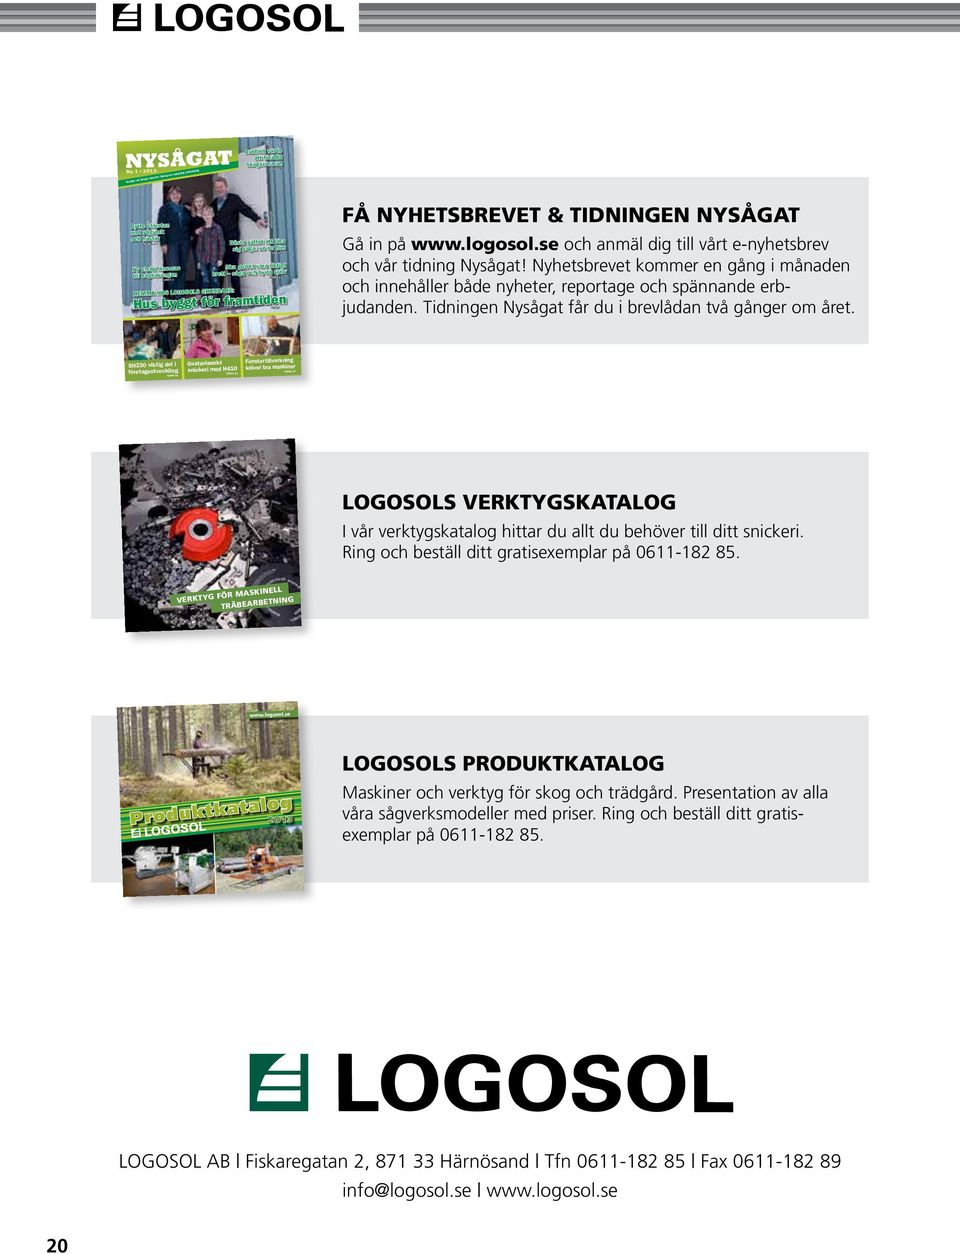 Få Nyhetsbrevet & tidningen Nysågat Gå in på www.logosol.se och anmäl dig till vårt e-nyhetsbrev och vår tidning Nysågat!